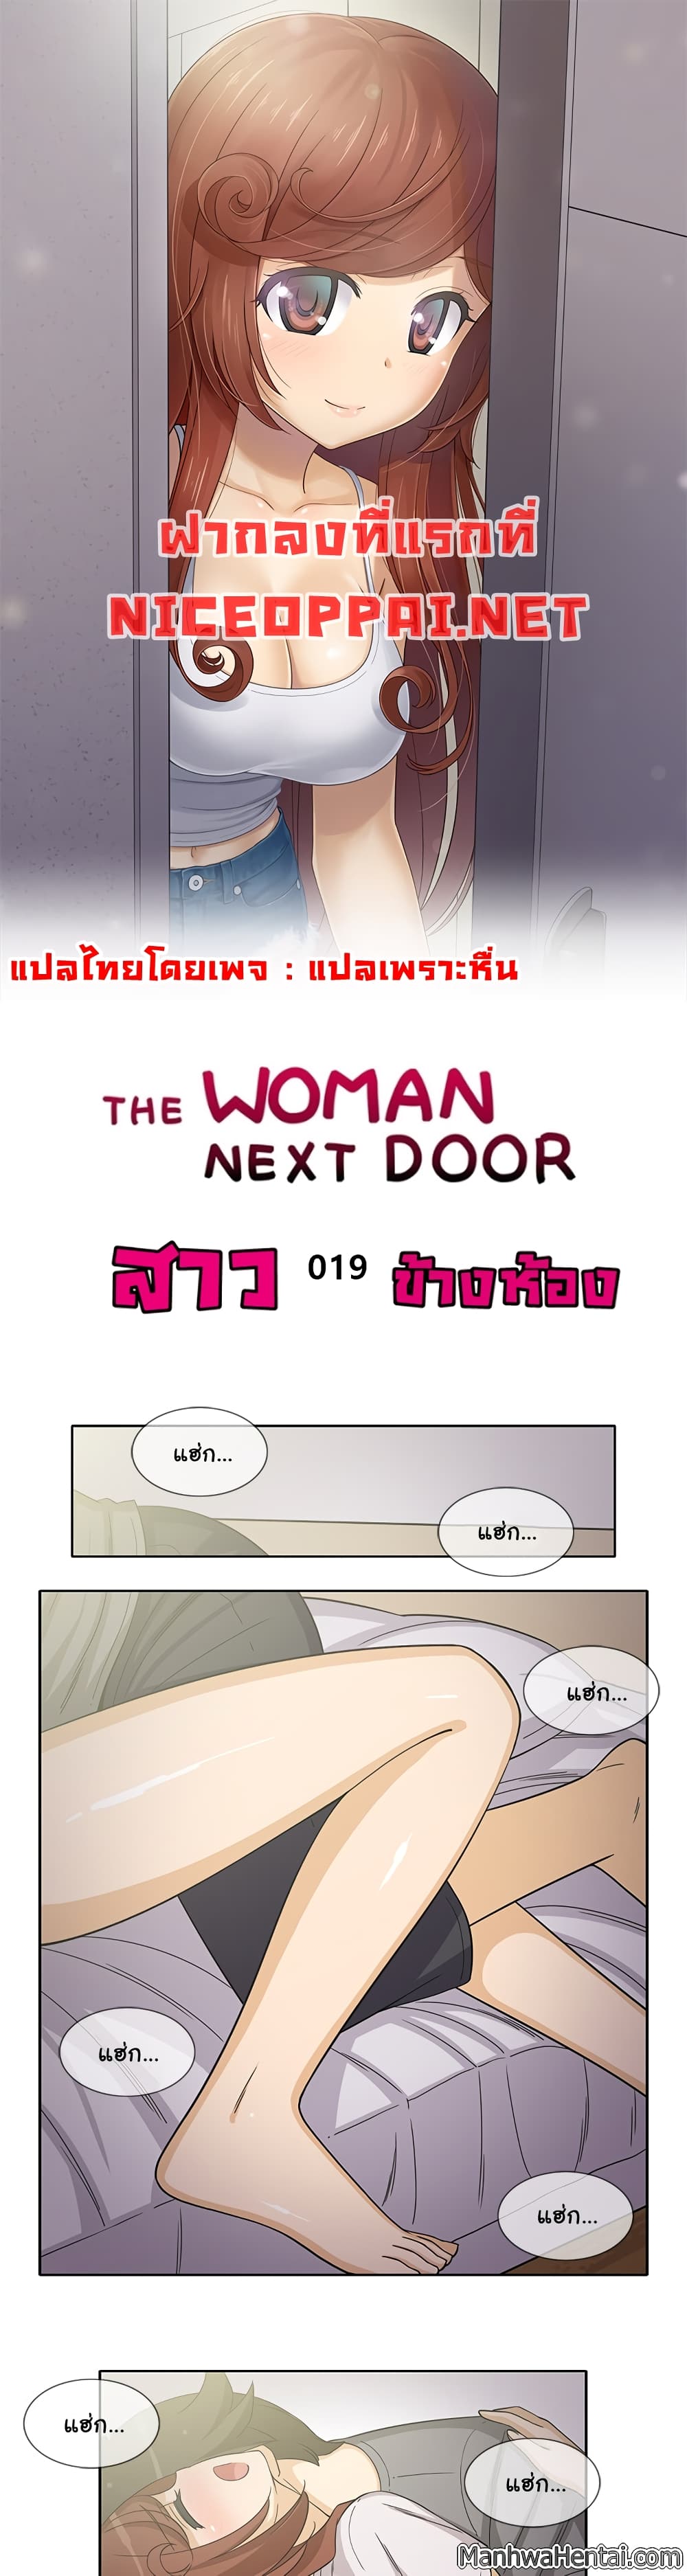 The Woman Next Door 19-19